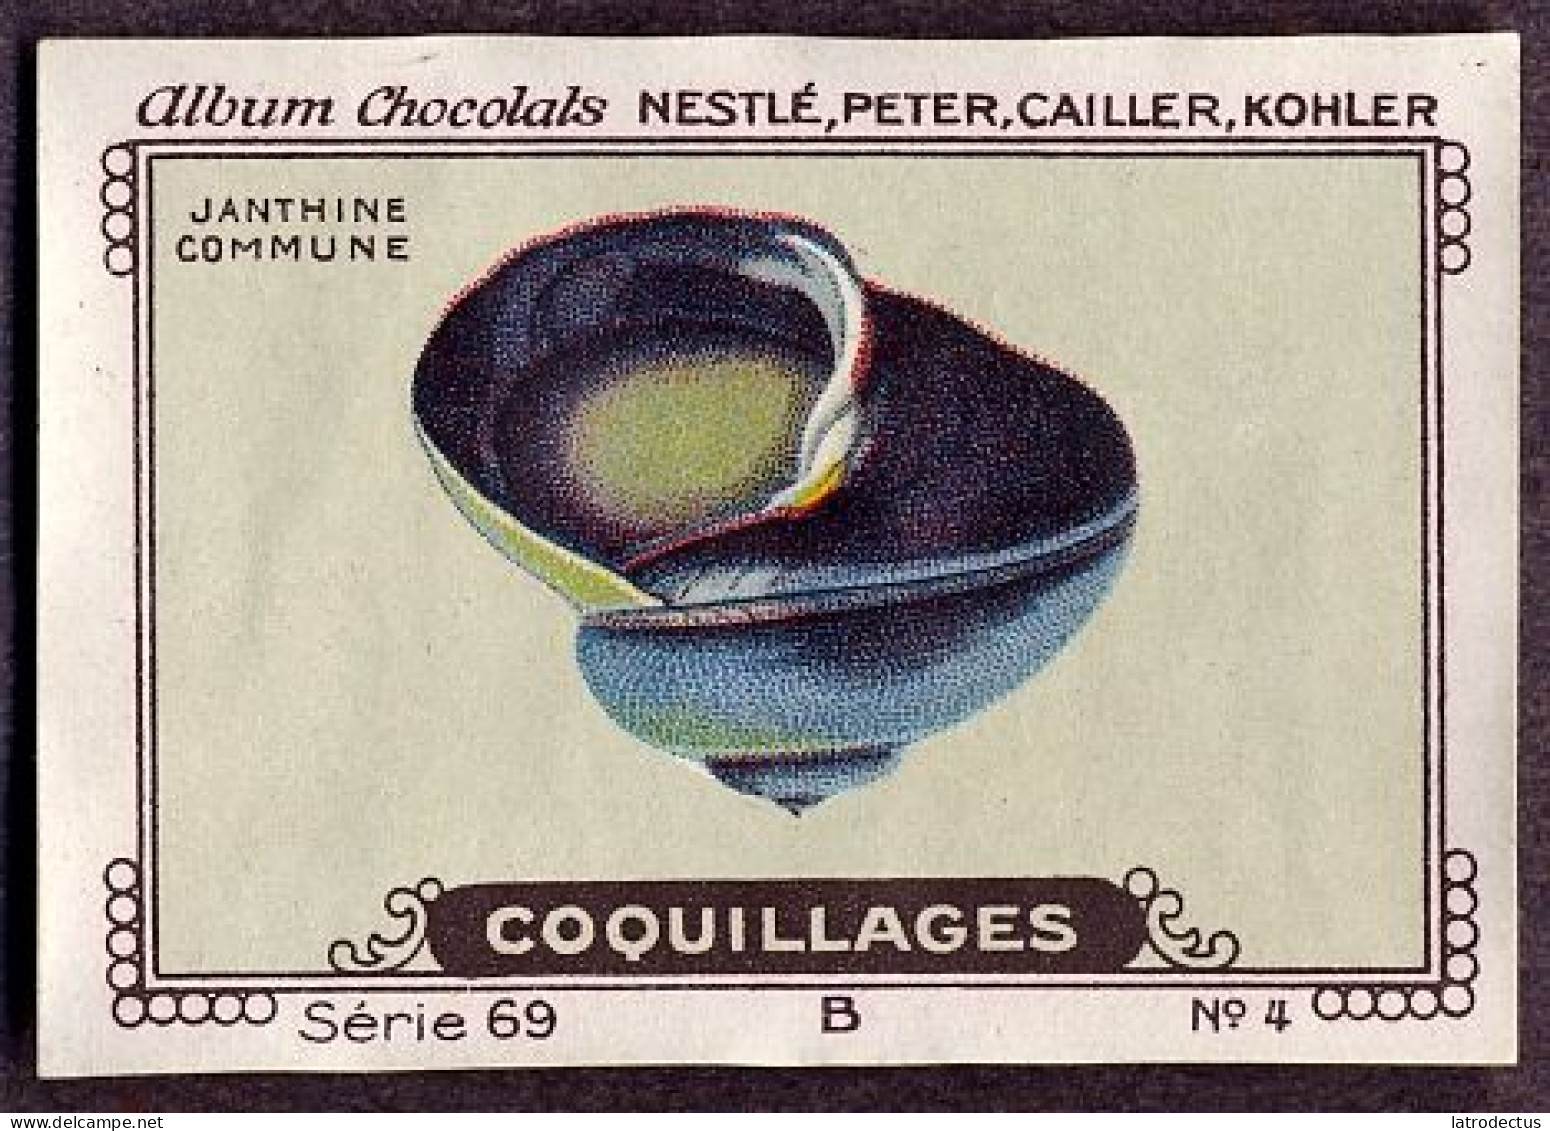 Nestlé - 69B - Coquillages, Shellfish - 4 - Janthine - Nestlé